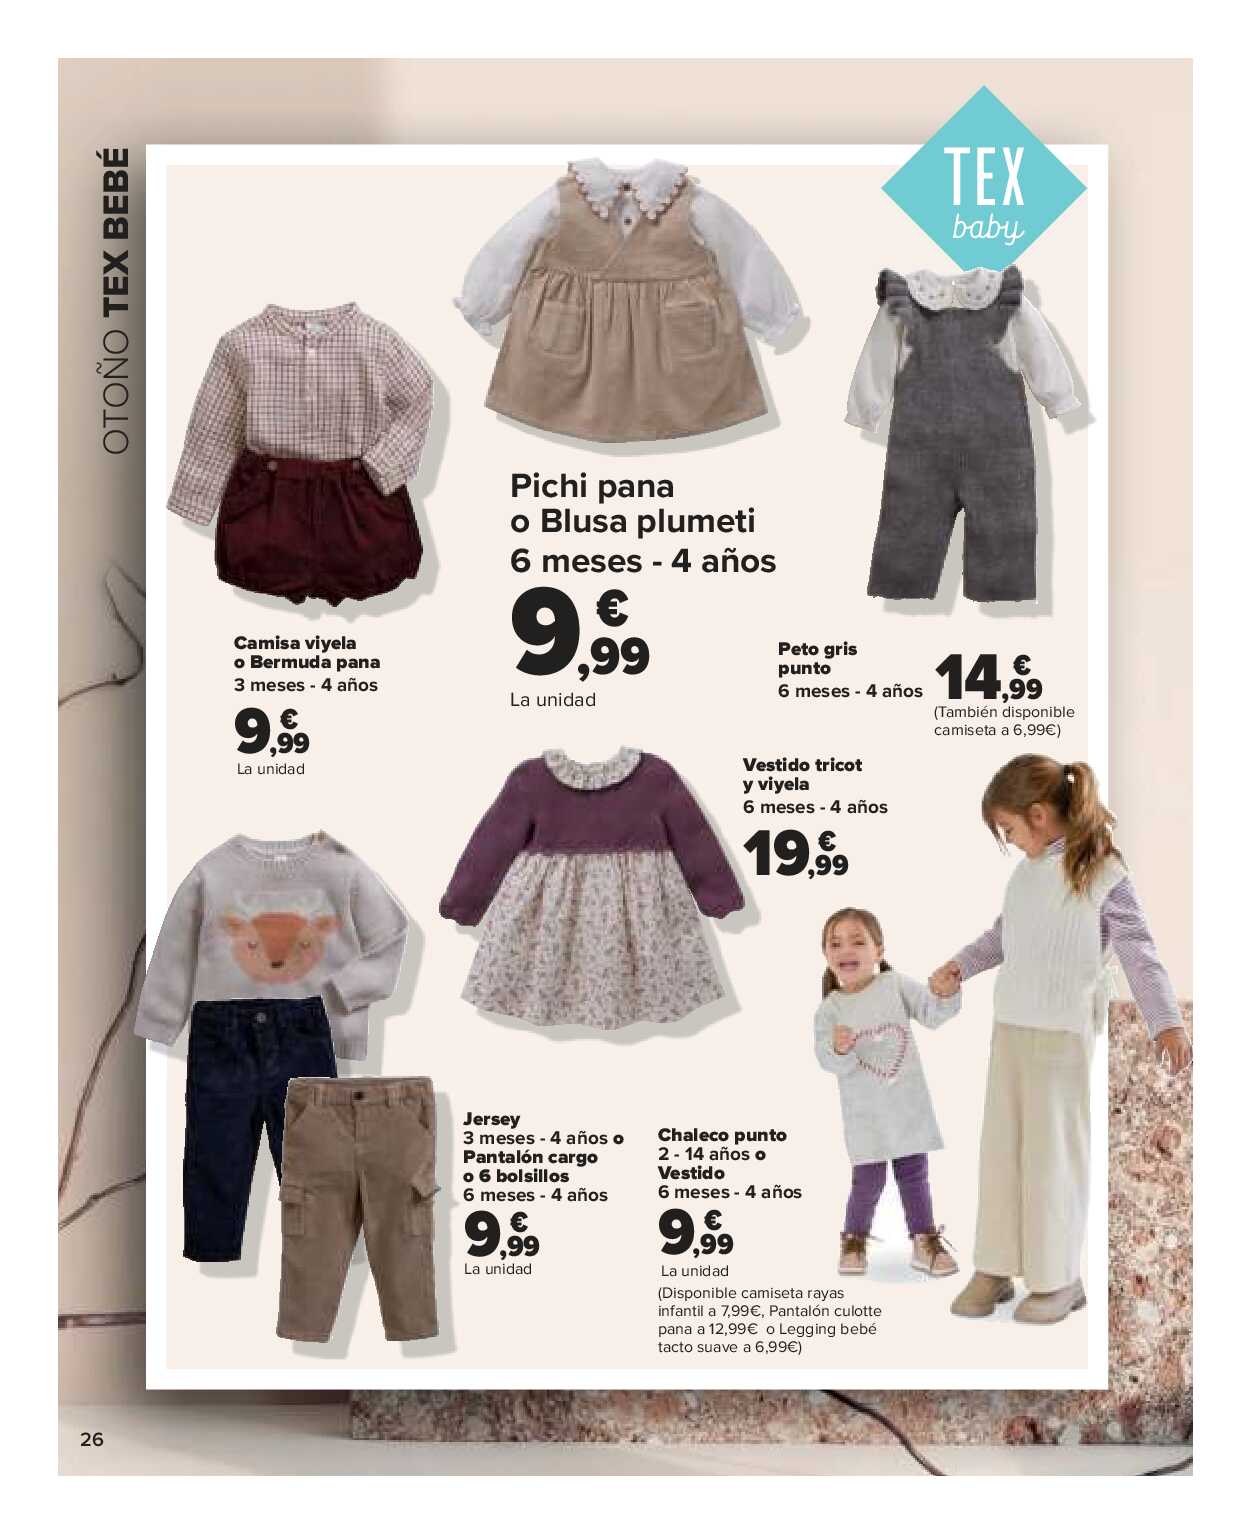 Textil mujer, hombre y niños Carrefour. Página 26